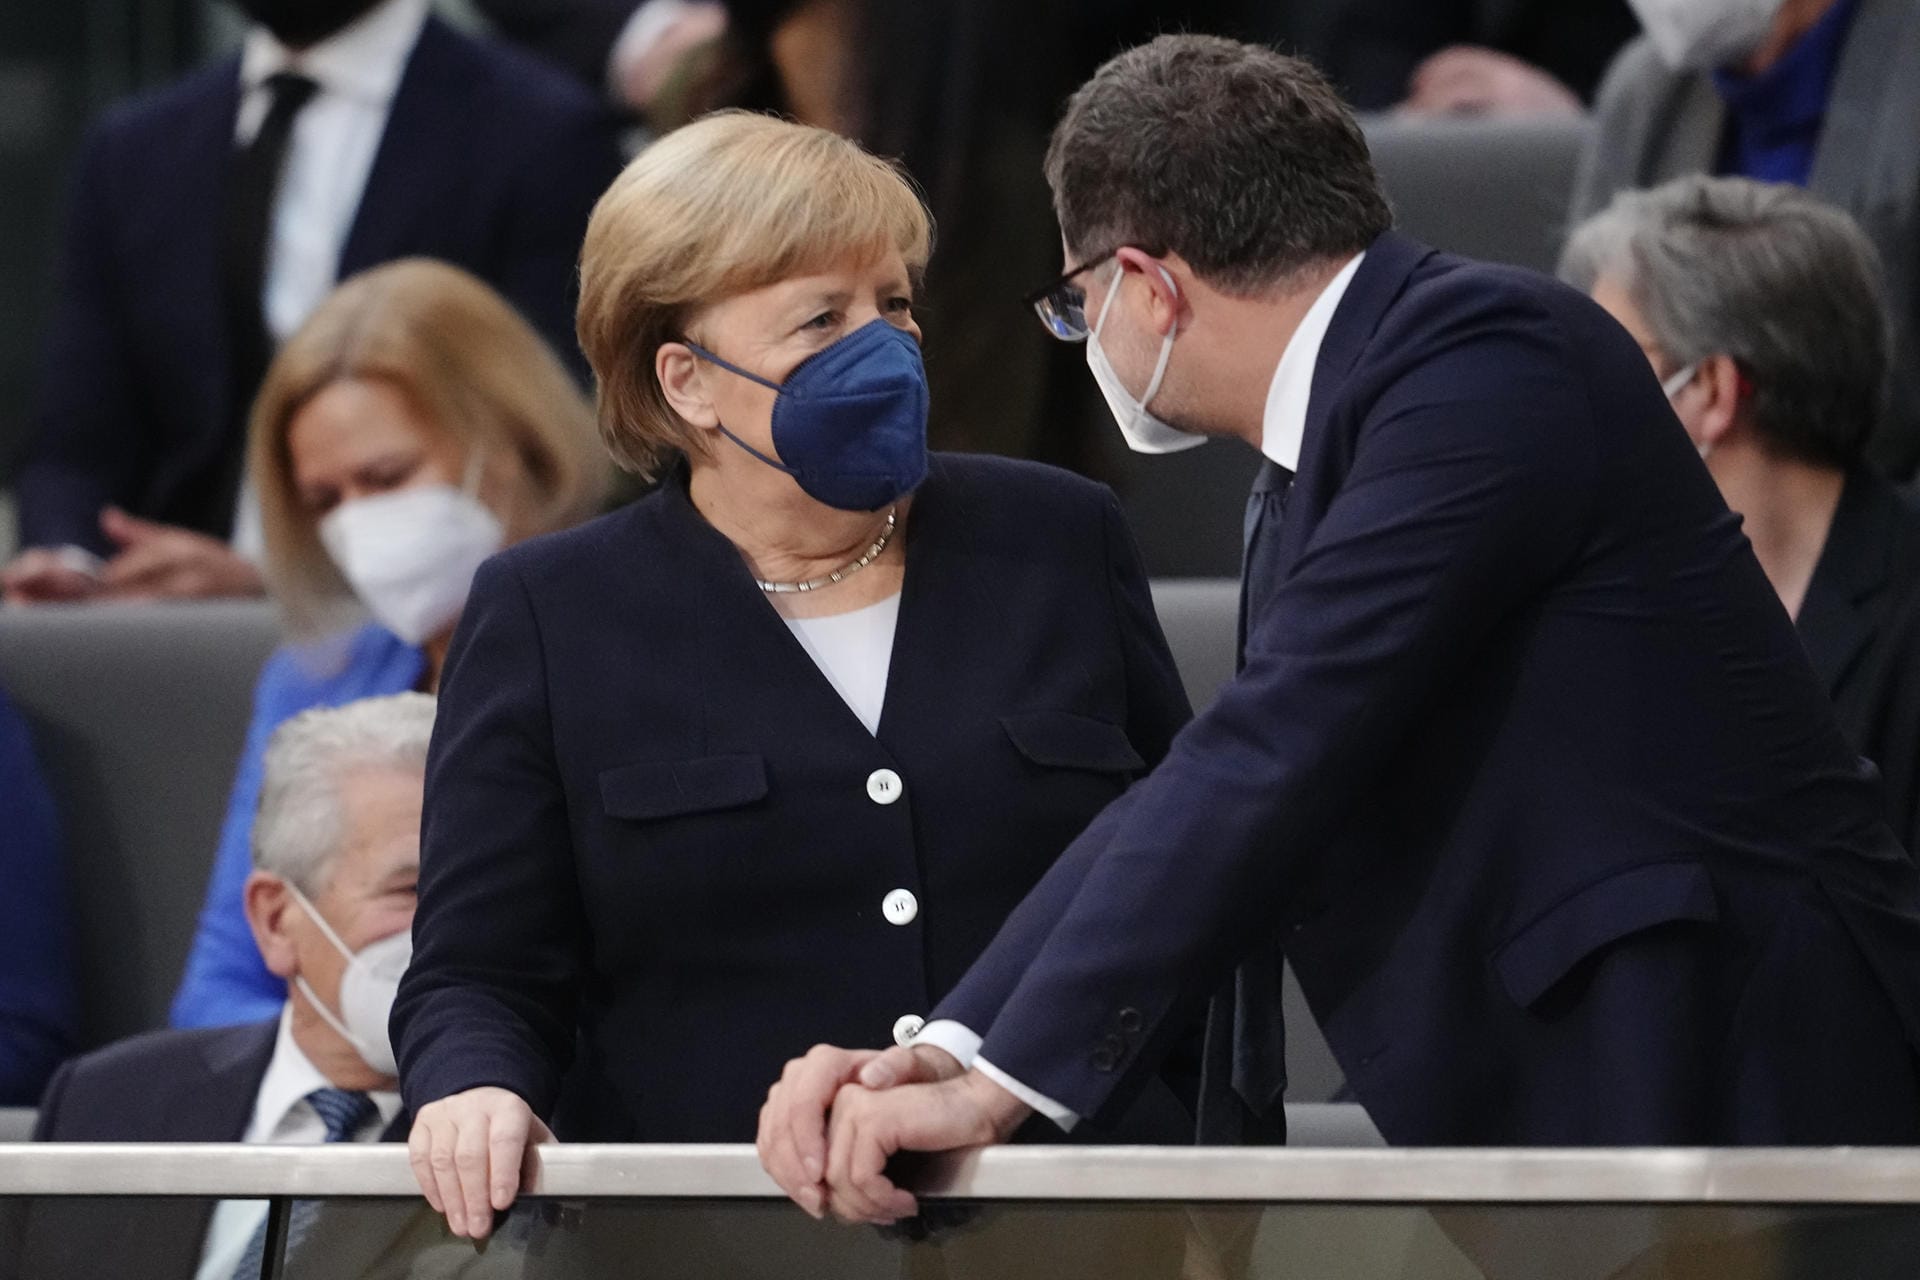 Die noch geschäftsführende Bundeskanzlerin Angela Merkel: Sie steht mit Wolfgang Schmidt (SPD), designierter Chef des Bundeskanzleramts, auf der Tribüne bei der Kanzlerwahl zusammen.